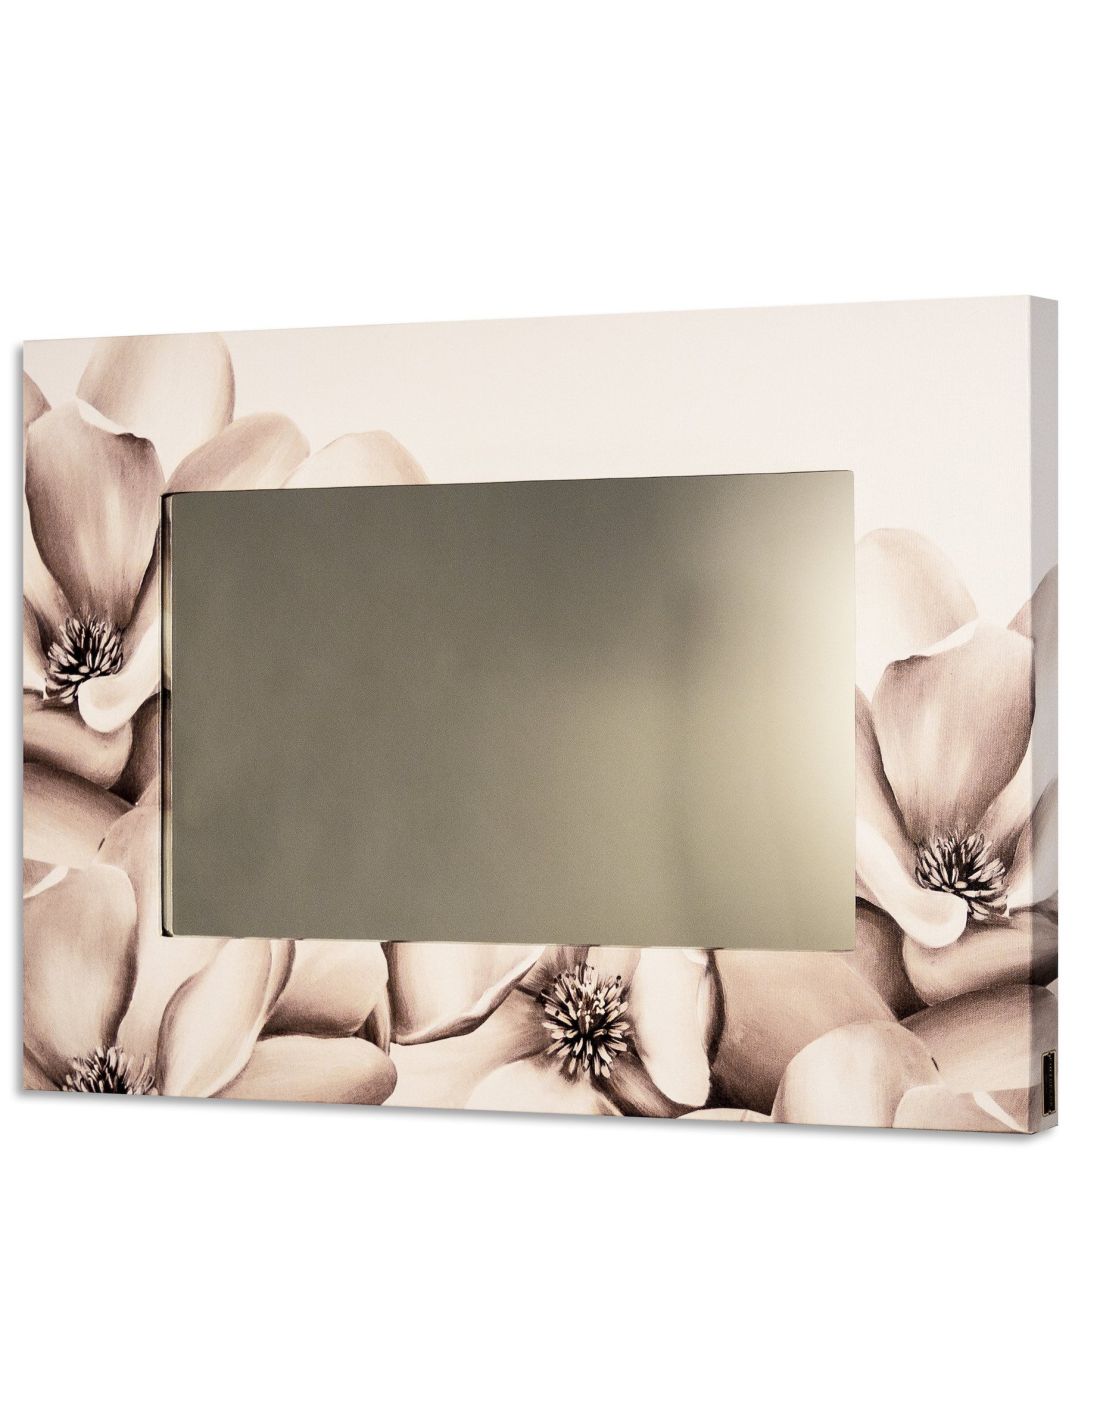 Specchio da parete design moderno con cornice Flowers